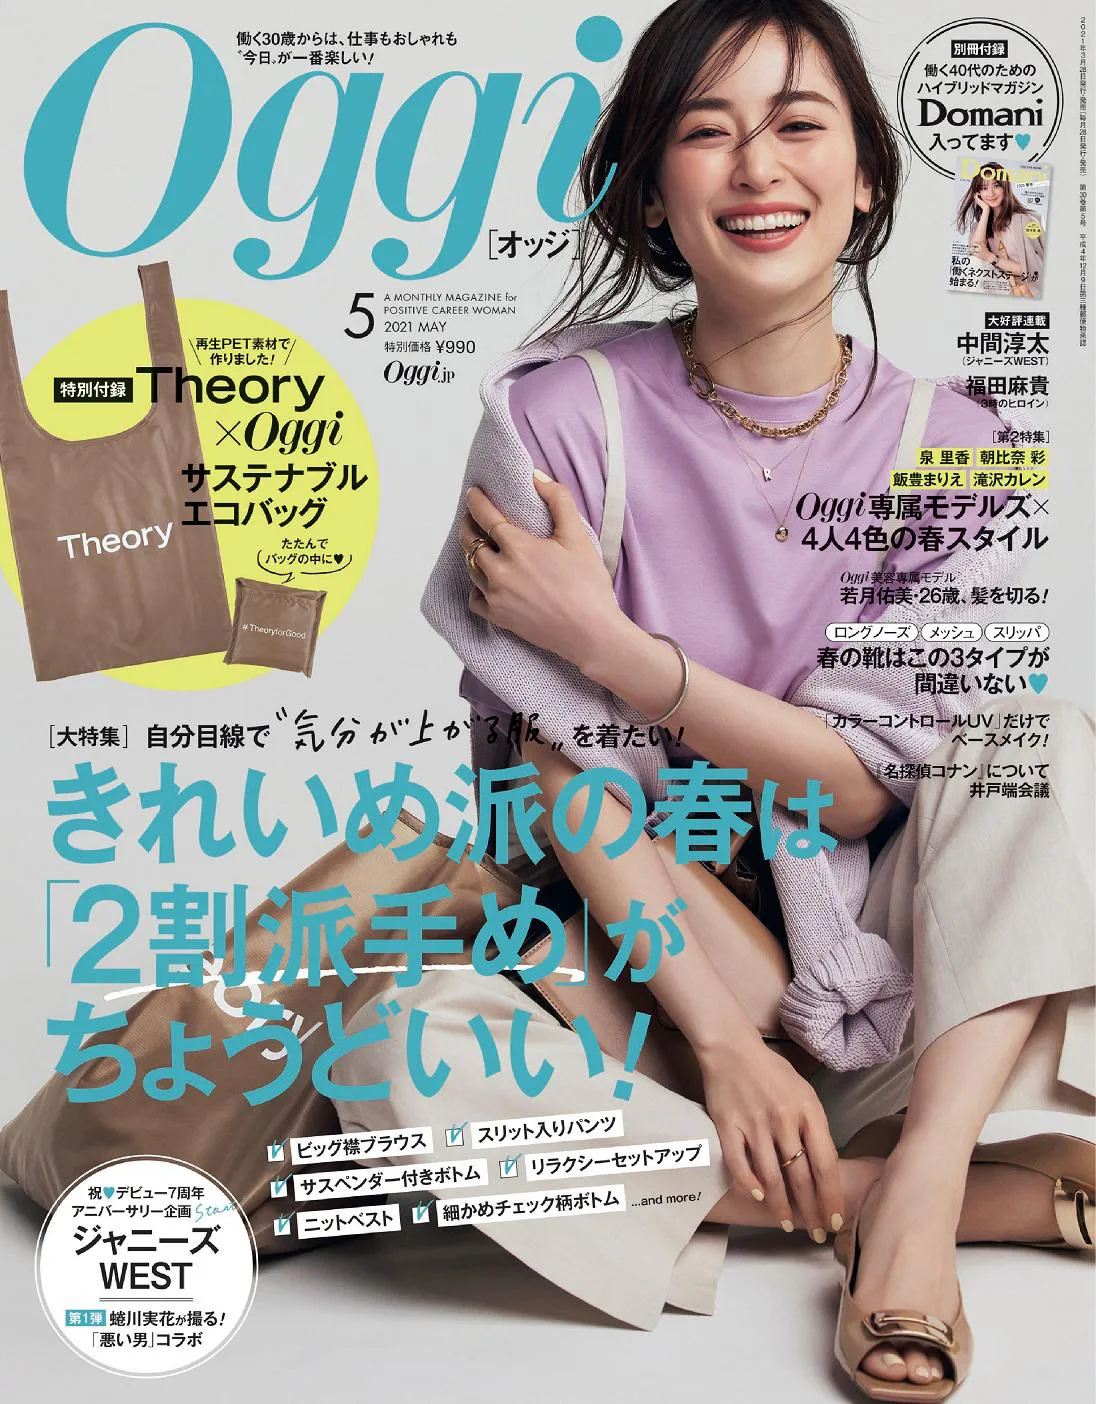 るファッション誌「Oggi」(小学館)は3月27日発売